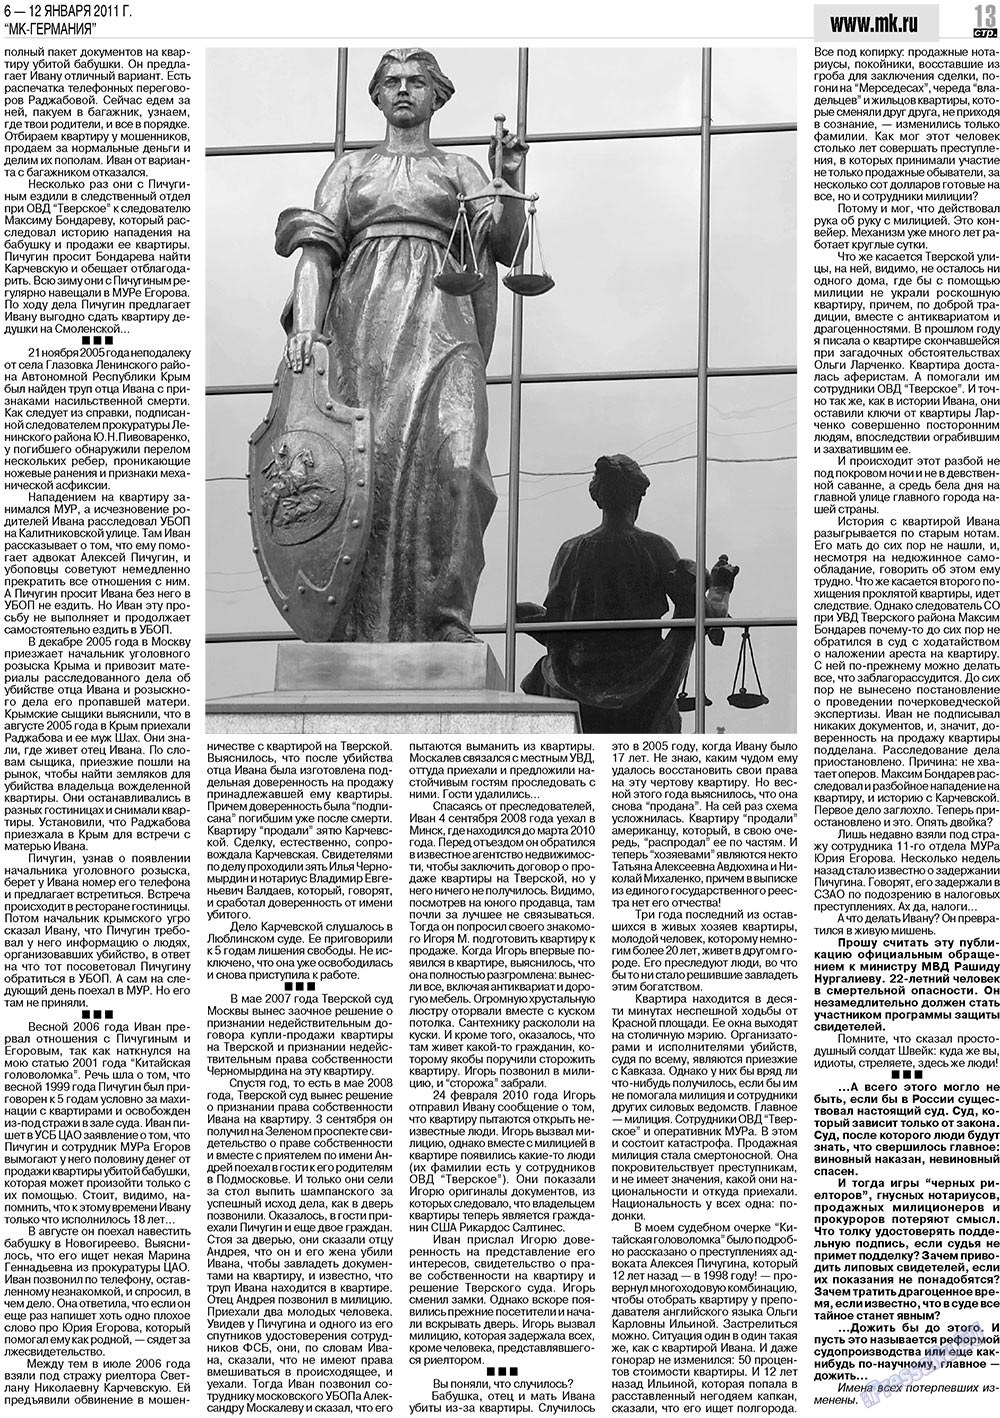 МК-Германия (газета). 2011 год, номер 1, стр. 13